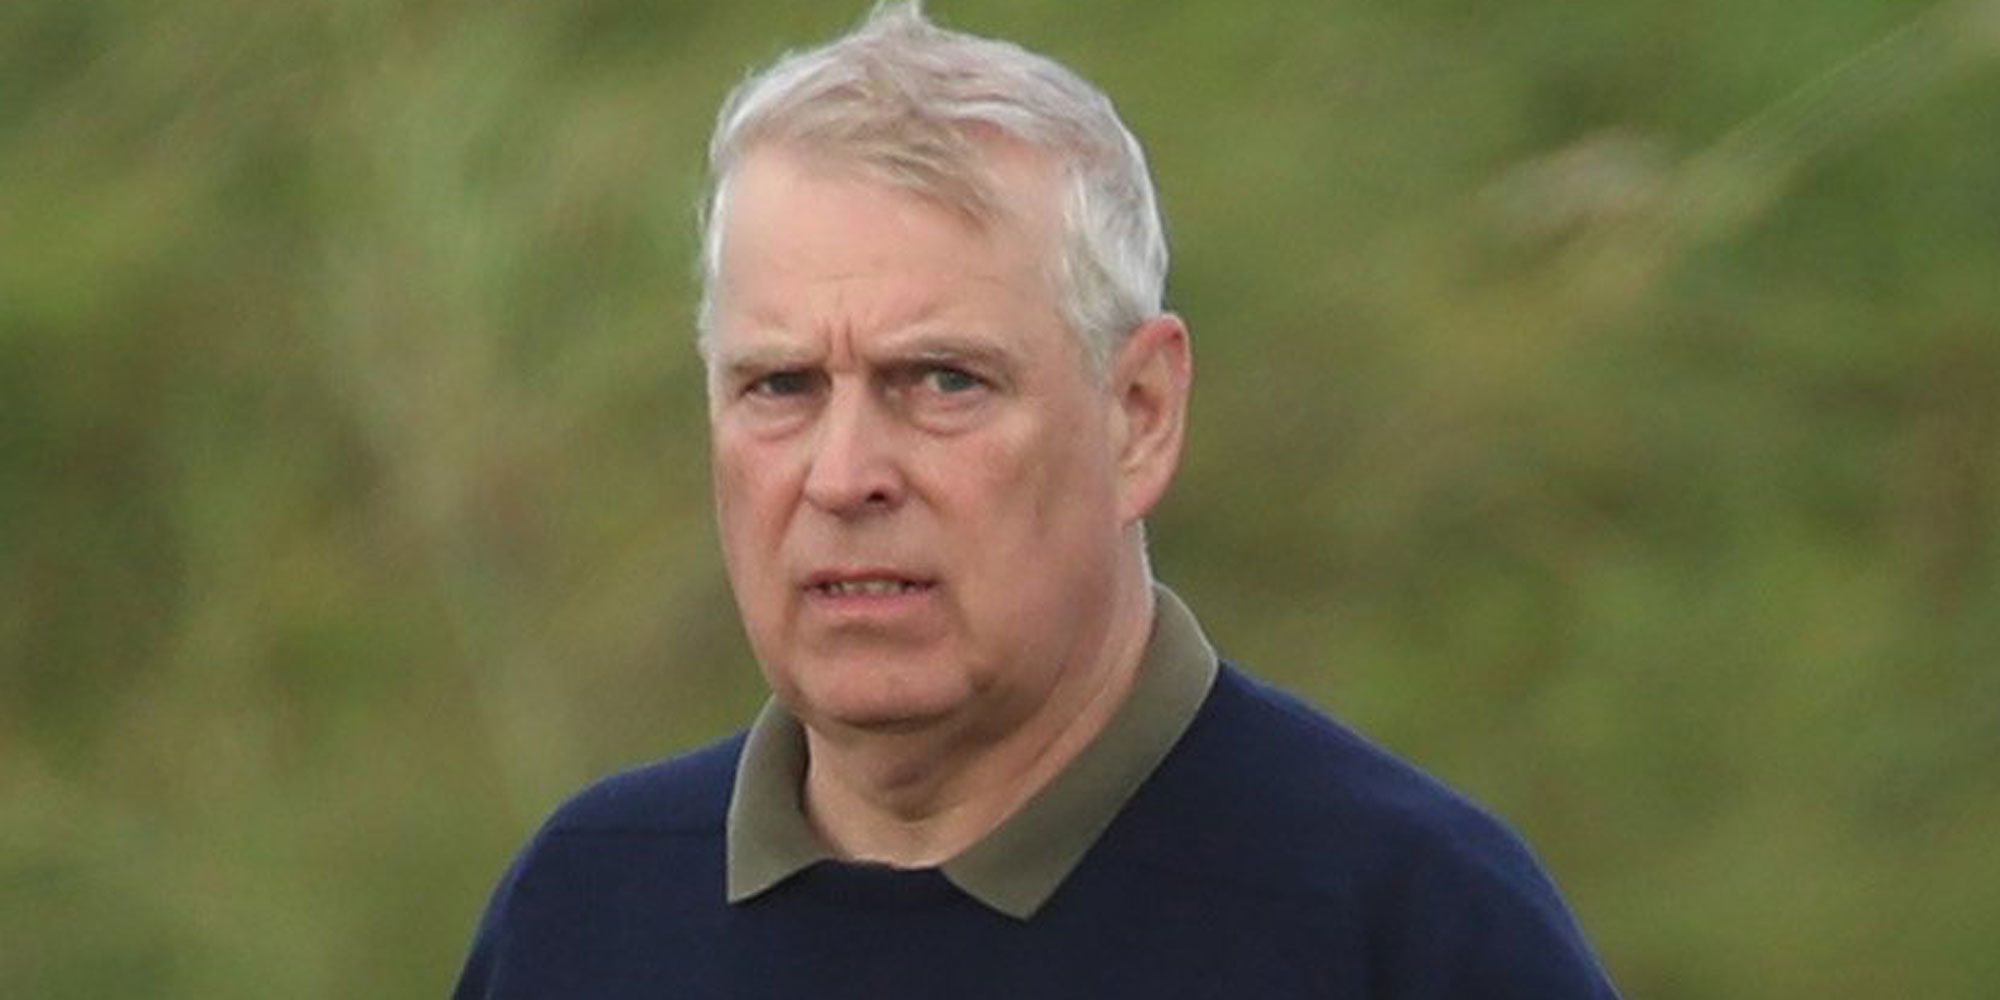 El Príncipe Andrés, fuera de su cargo en la Casa Real británica tras el escándalo del caso Epstein